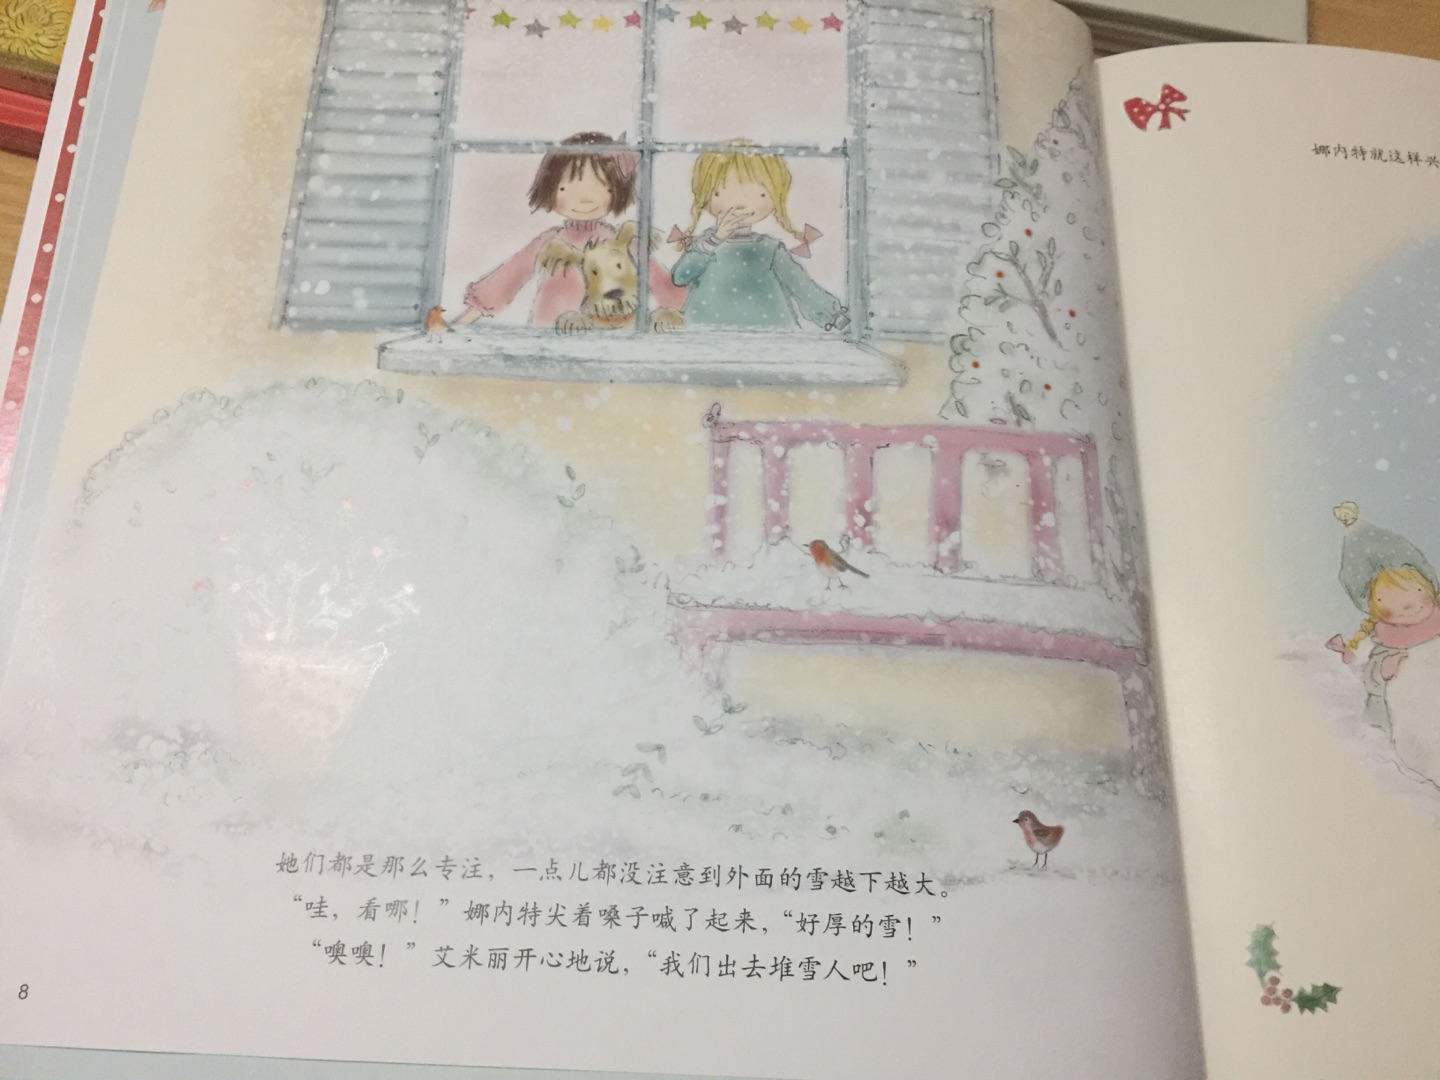 一本关于友谊的书，两个小姑娘一起准备圣诞装备并一起去玩雪人，其中一人因为玩雪生病了，另一人准备两人的圣诞仙女裙和礼物装备，然后去探病。内容浅显易懂，水粉画画风还可以，放在书柜里三岁半女儿会去自主阅读。